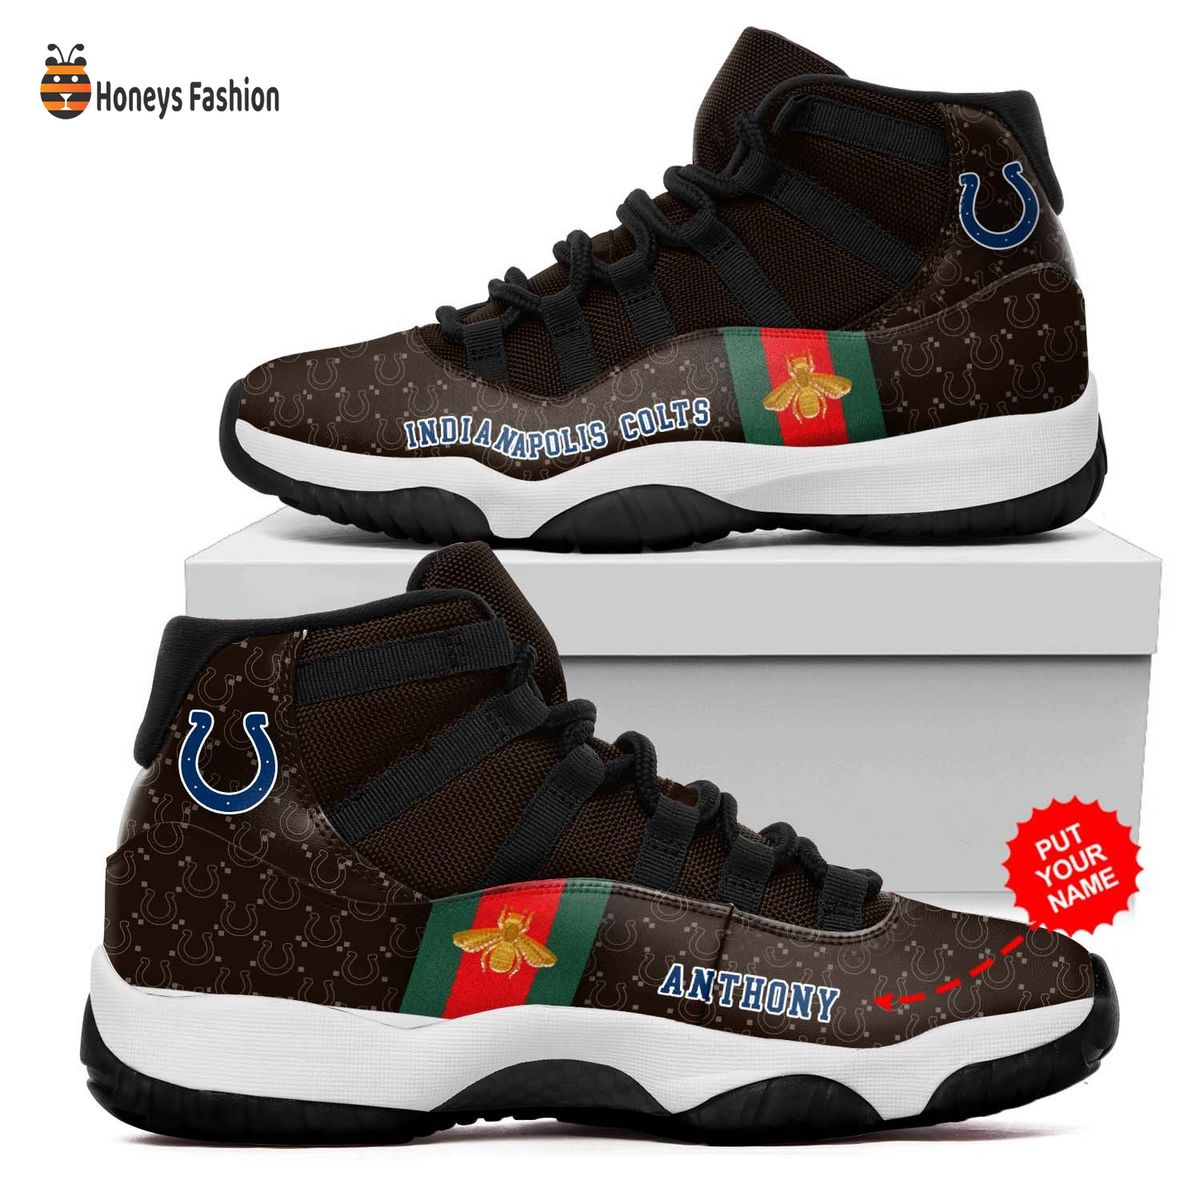 Indianapolis Colts NFL Gucci Air Jordan 11 Shoes